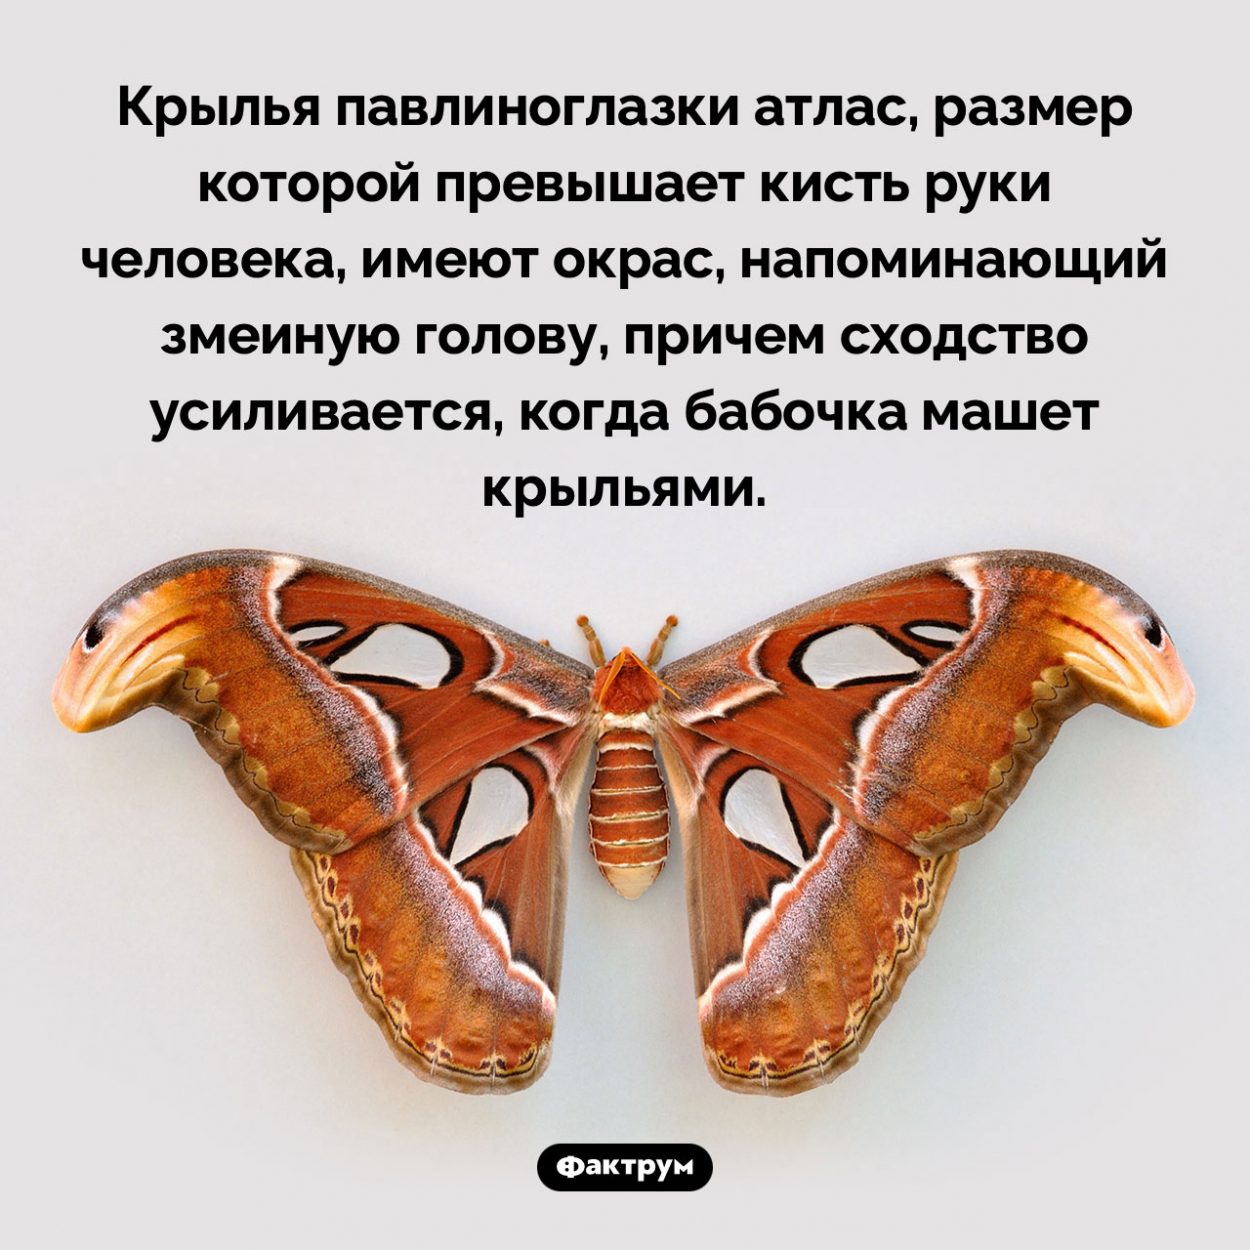 Бабочка со «змеиной головой». Крылья павлиноглазки атлас, размер которой превышает кисть руки человека, имеют окрас, напоминающий змеиную голову, причем сходство усиливается, когда бабочка машет крыльями.